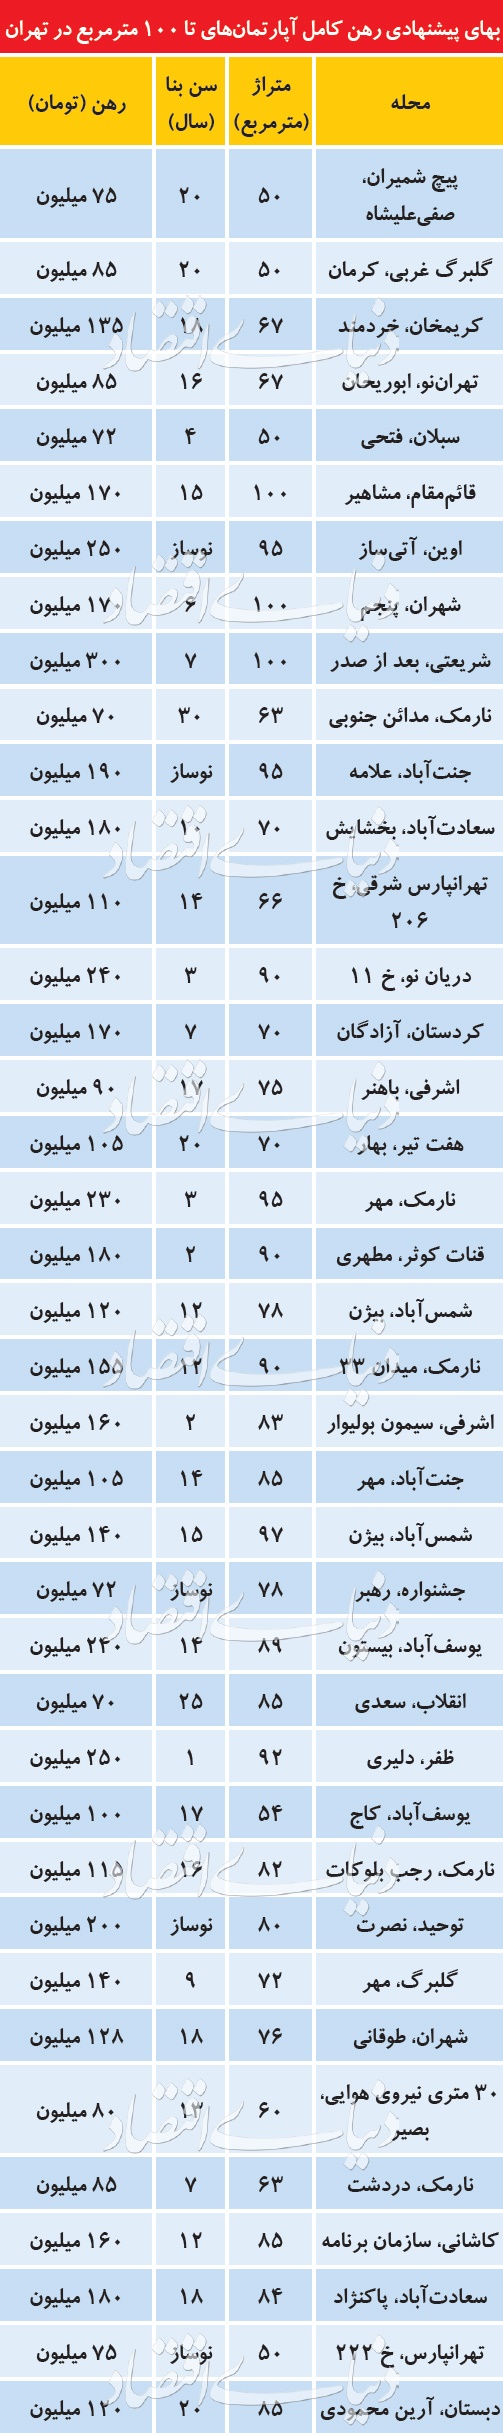 قیمت رهن کامل آپارتمان در نقاط مختلف تهران/ افزایش سرسام آور قیمتها